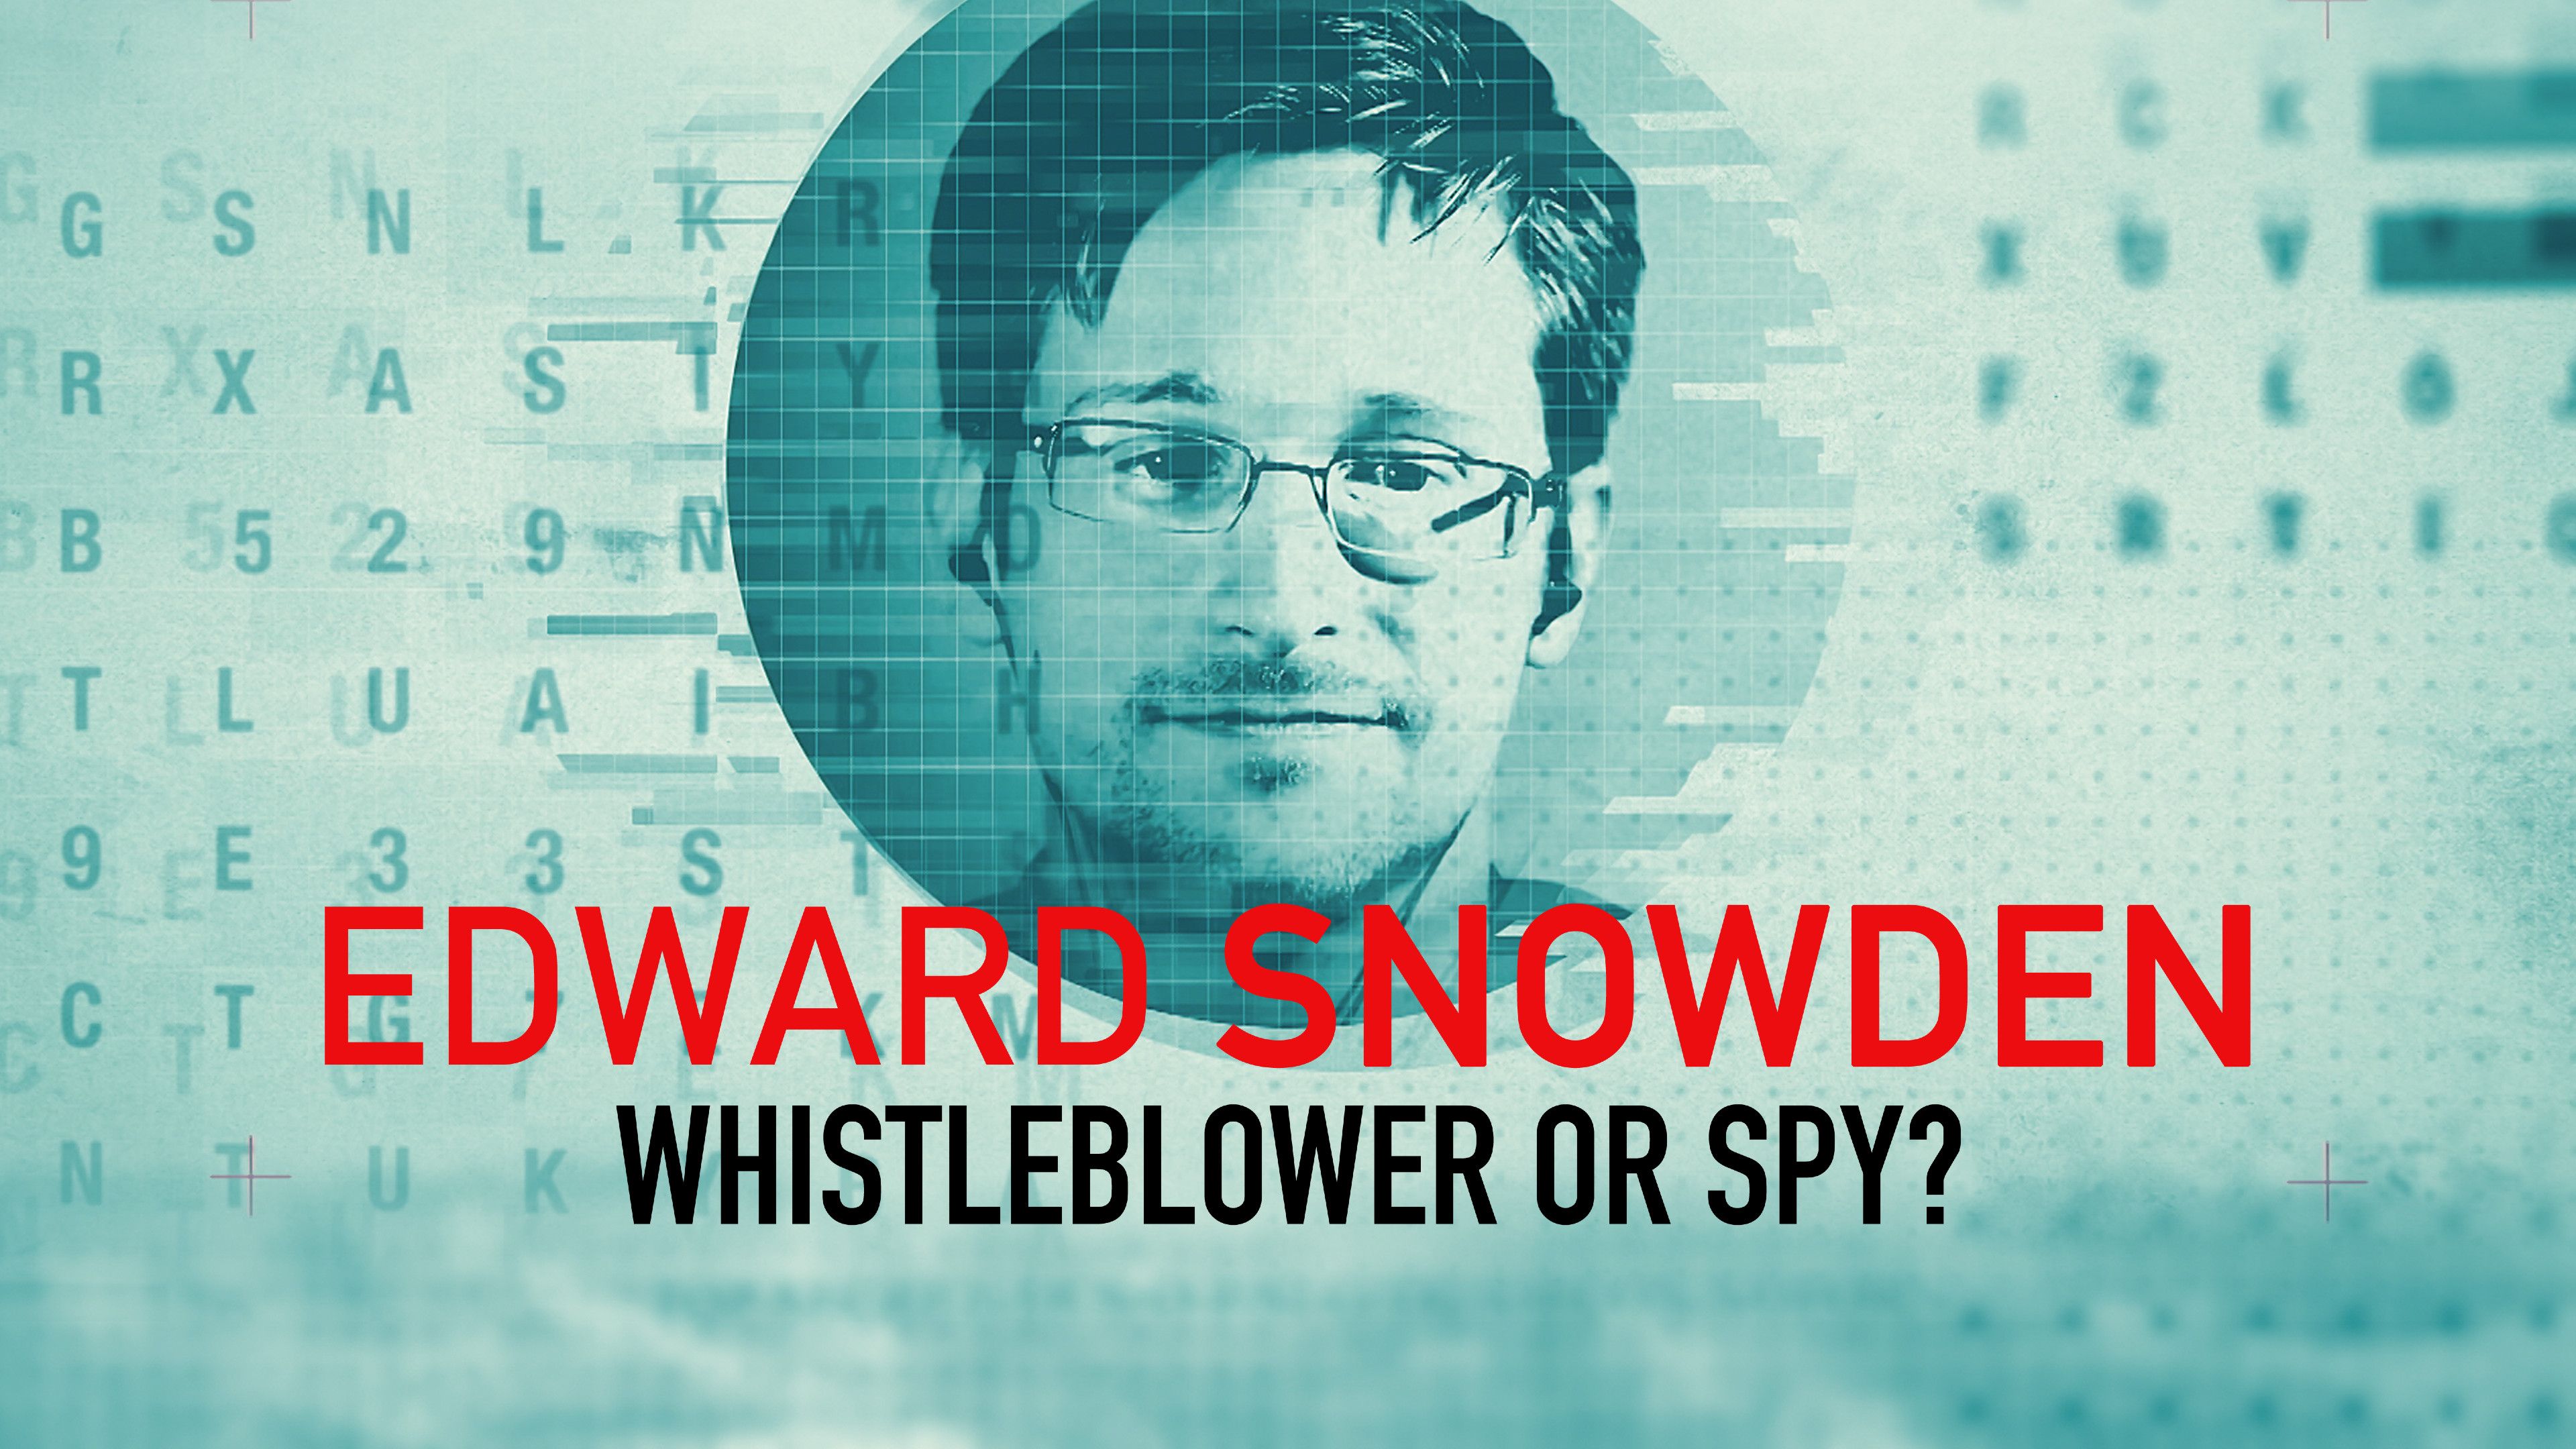 Edward Snowden: Whistleblower Or Spy?